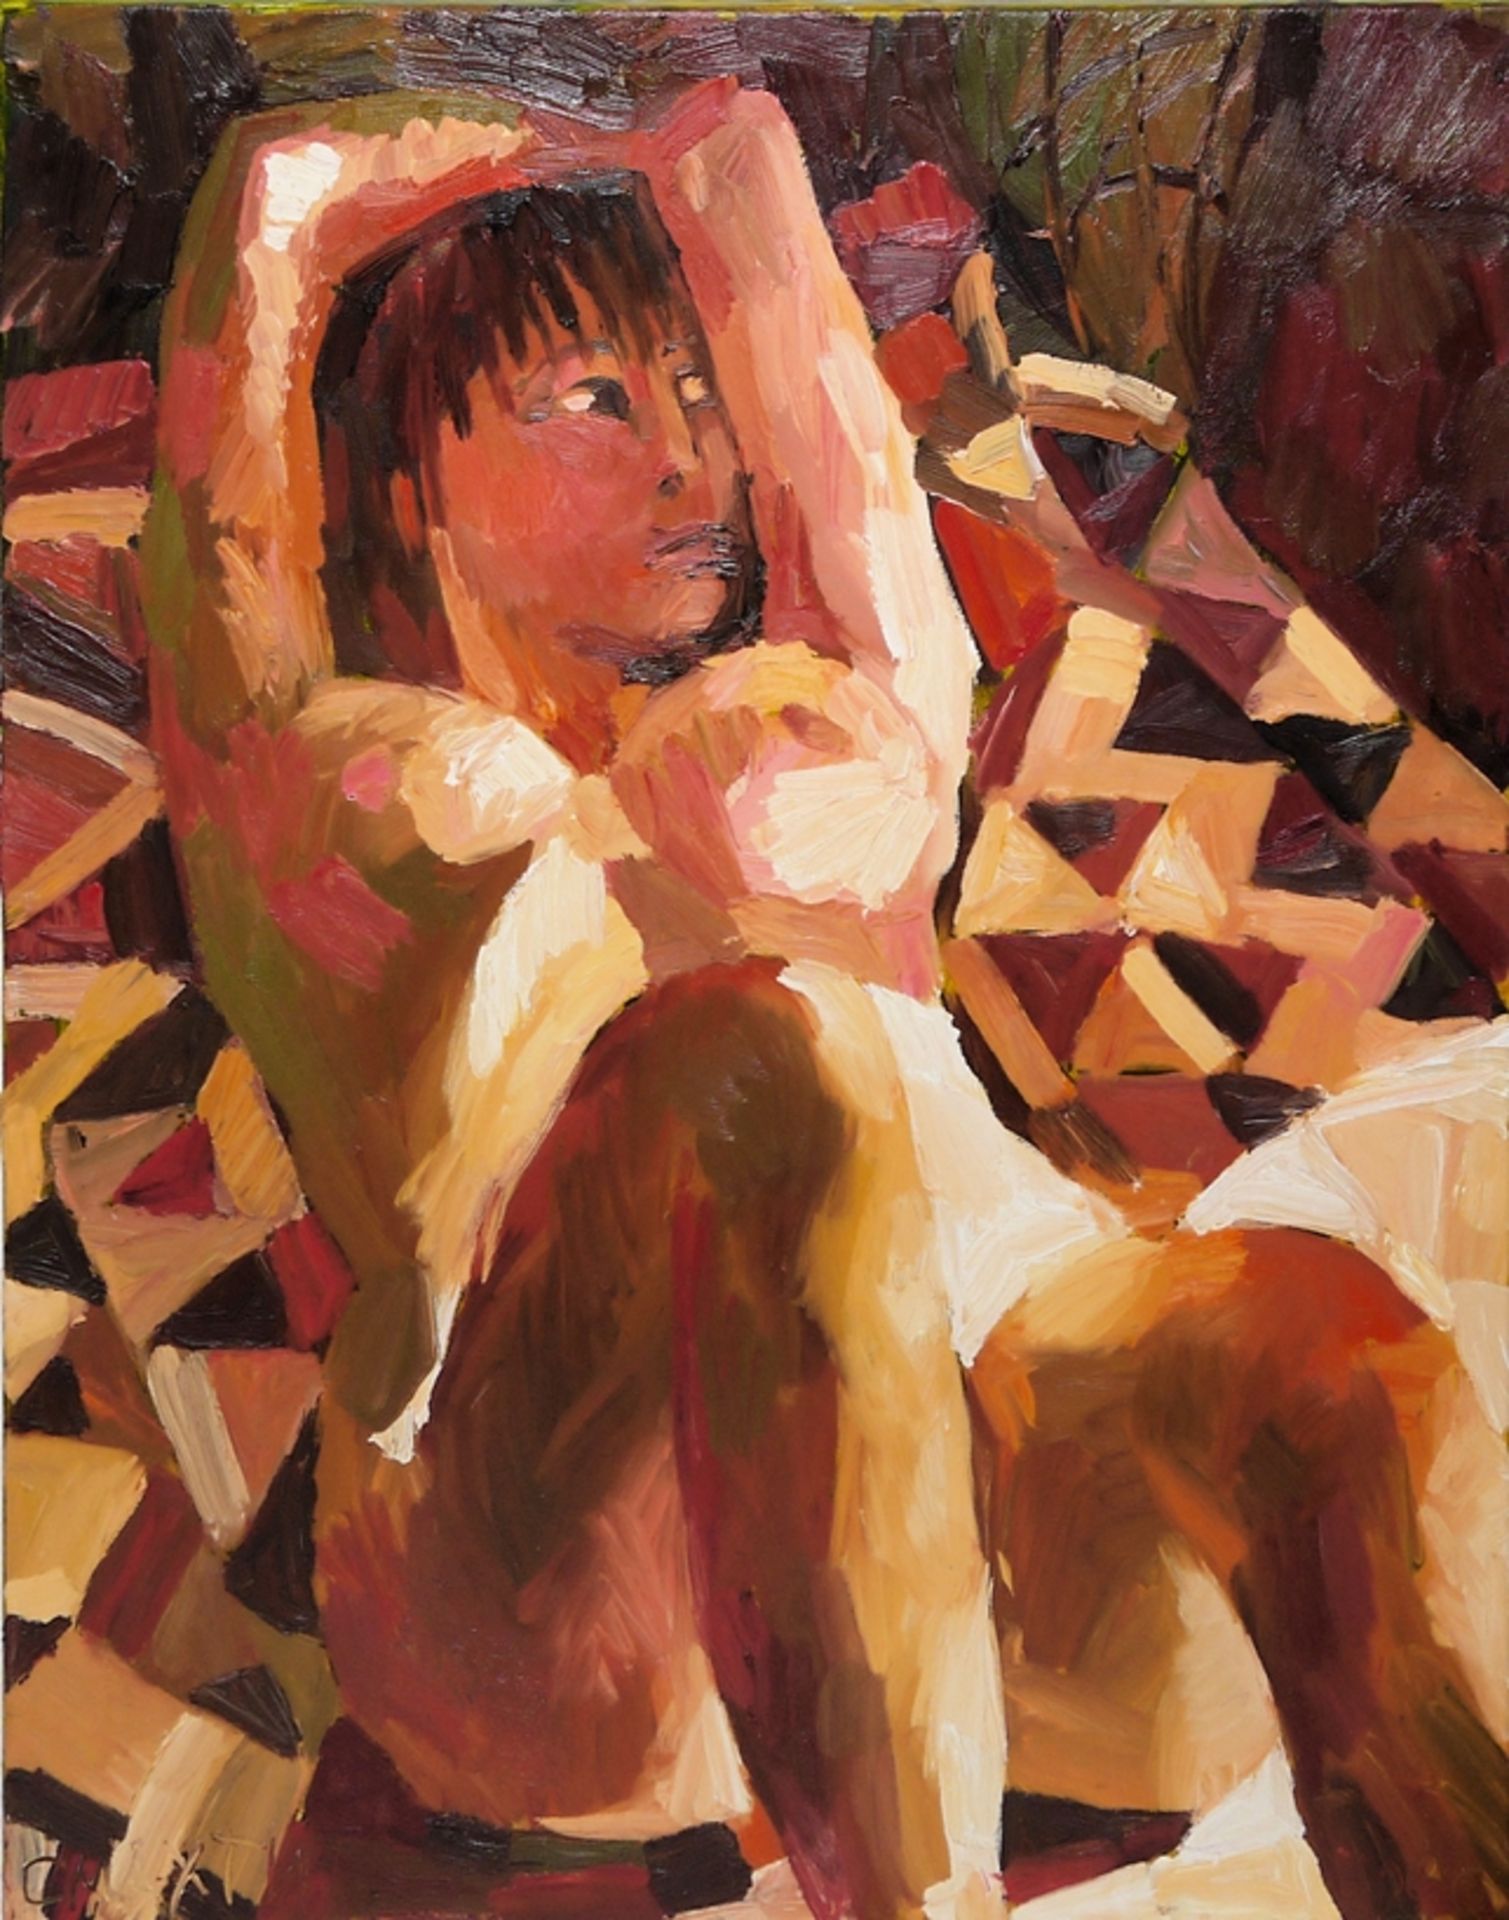 Vladimir Smathin, Galeriennachlass mit 11 Originalen: "Mädchenbilder" aus den Jahren 1999/2000 & "A